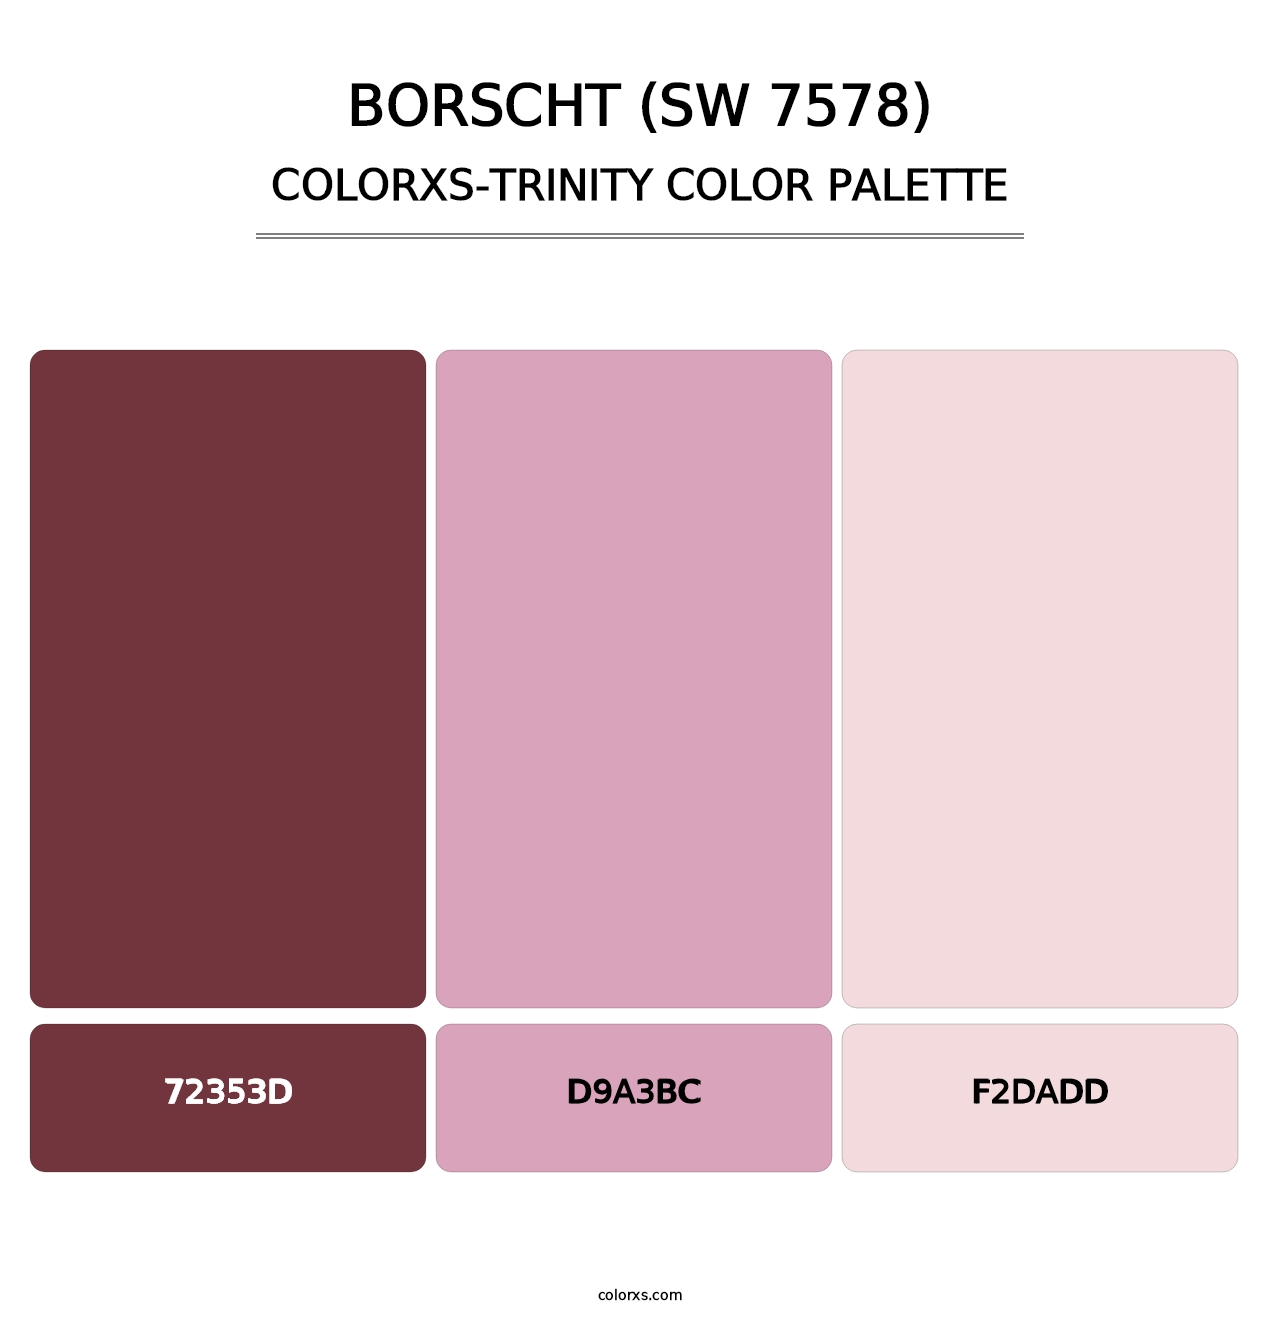 Borscht (SW 7578) - Colorxs Trinity Palette